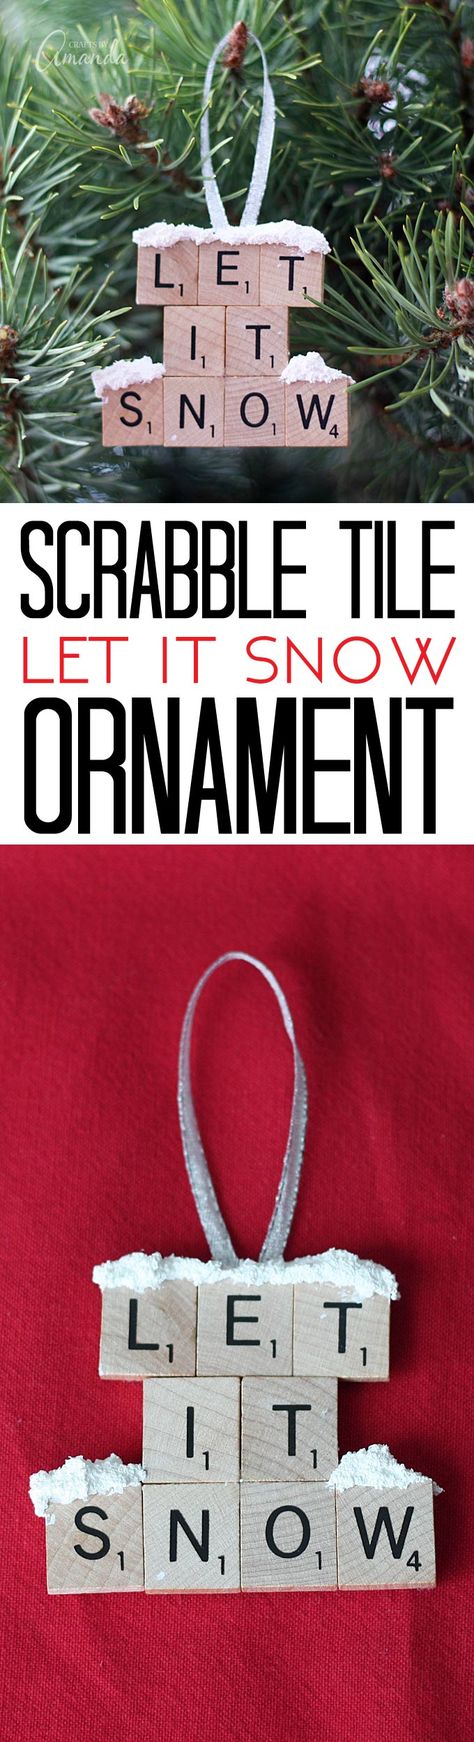 Let it Snow – Scrabble Tile Ornament